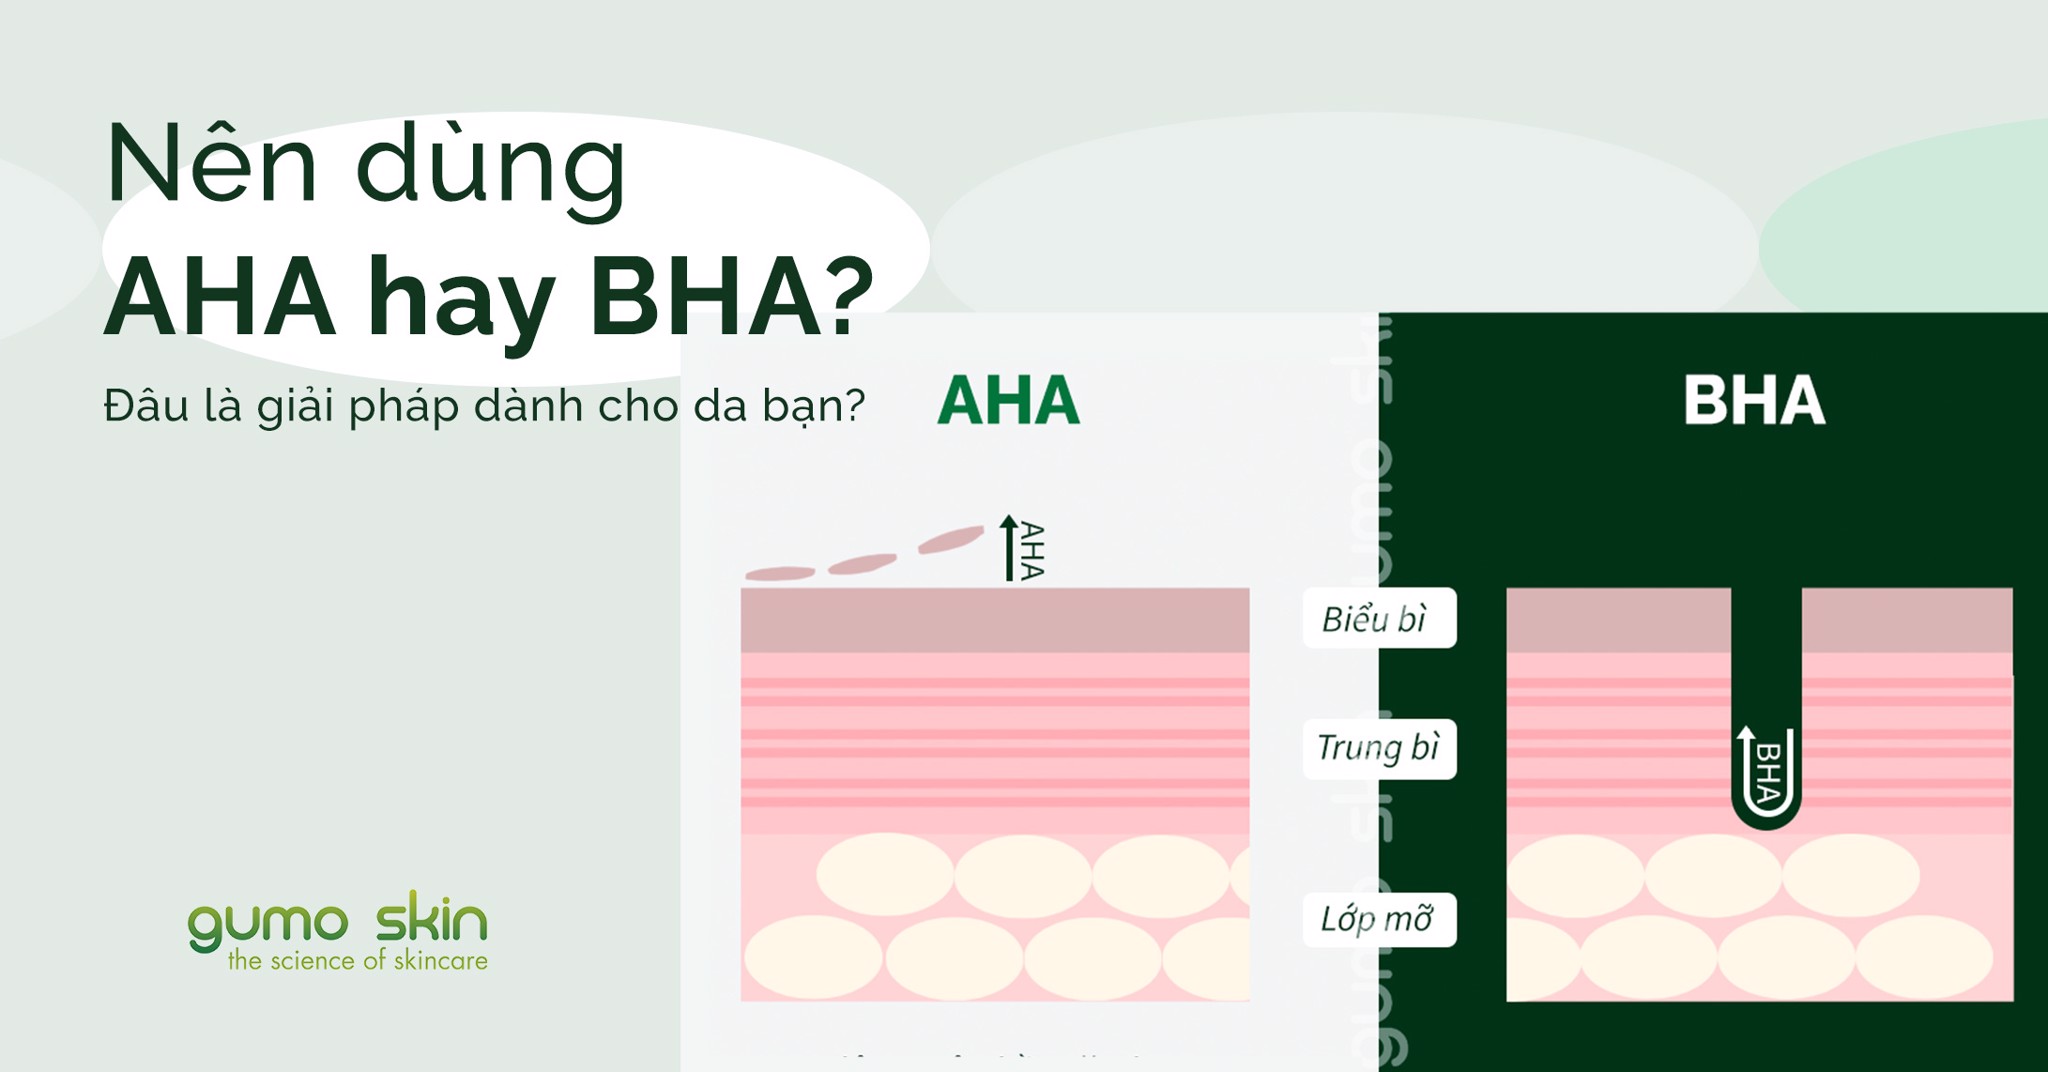 Nên dùng AHA hay BHA - Đâu là giải pháp dành cho da bạn?